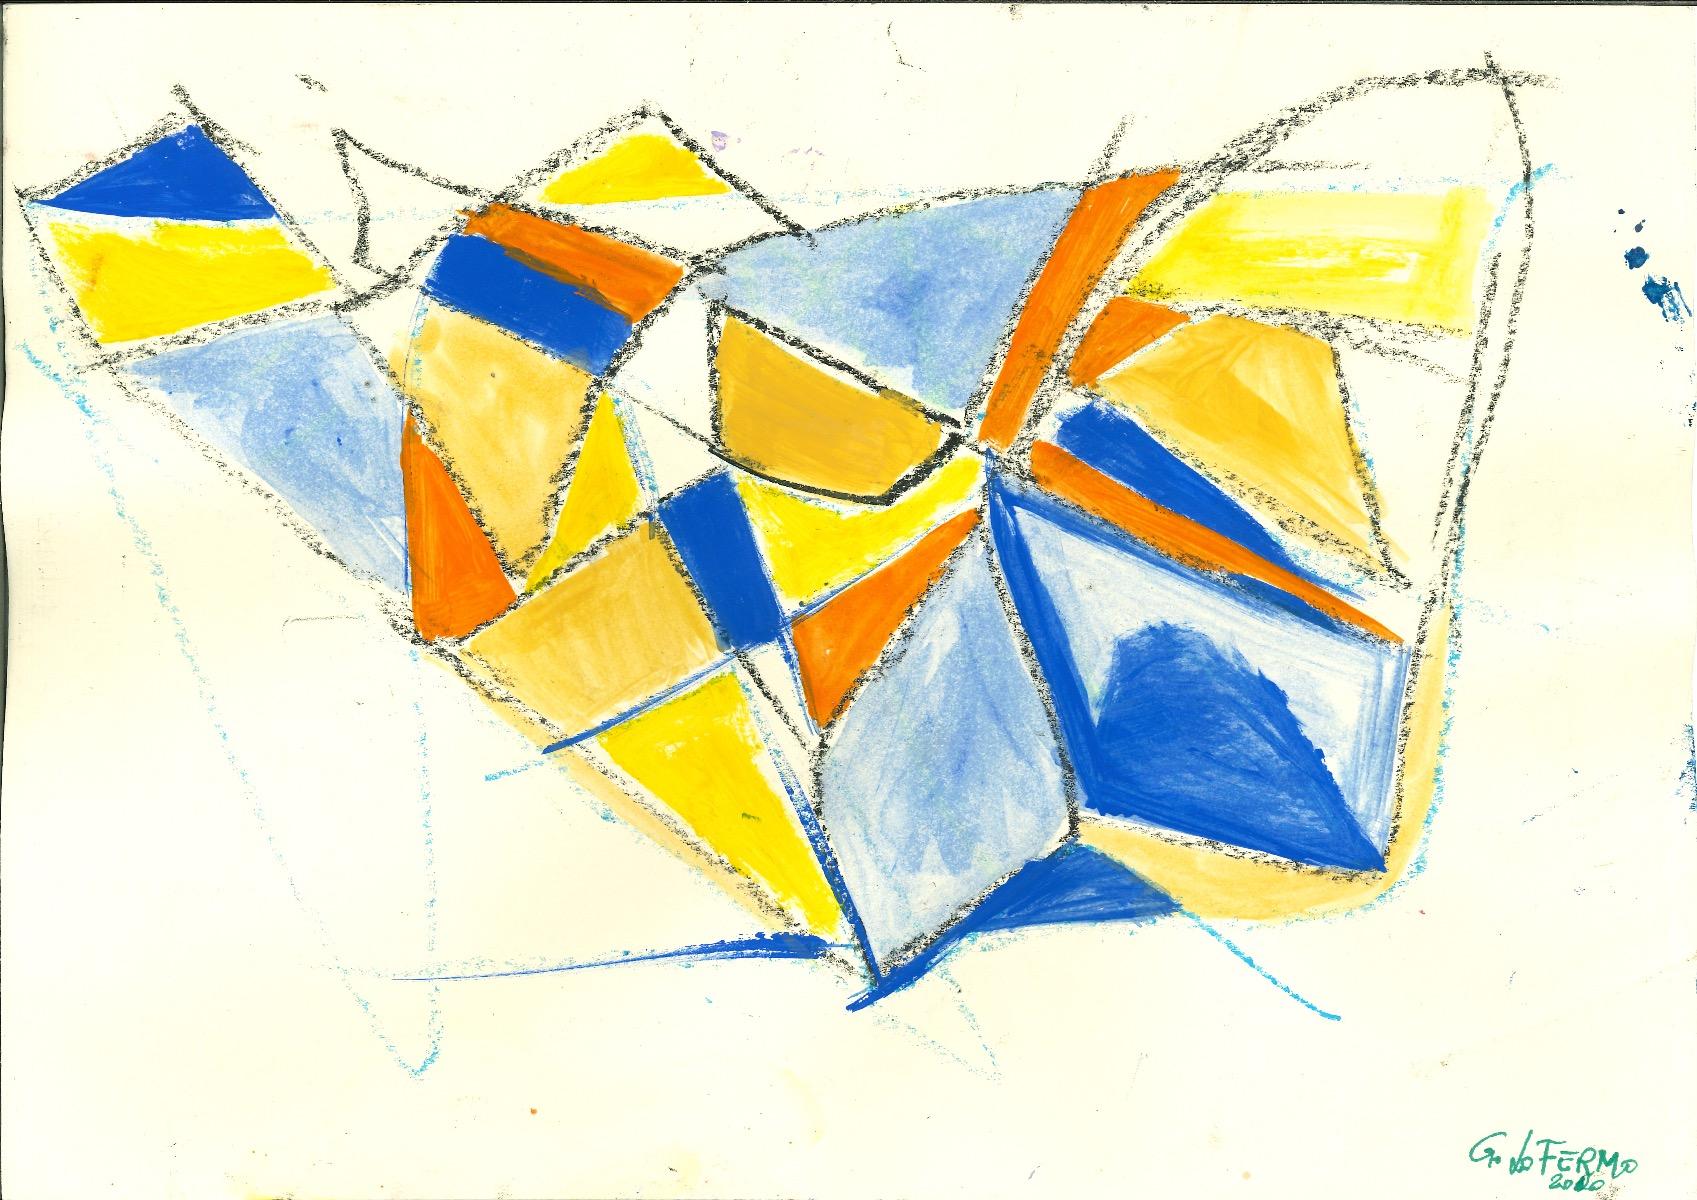 Blue Shapes ist ein Originalkunstwerk von Giorgio Lo Fermo (geb. 1947) aus dem Jahr 2020.

Mischtechnik in Tempera und Aquarell auf Papier

Vom Künstler rechts unten handsigniert und datiert

Perfekte Bedingungen.


Giorgio Lo Fermo. Die Komposition